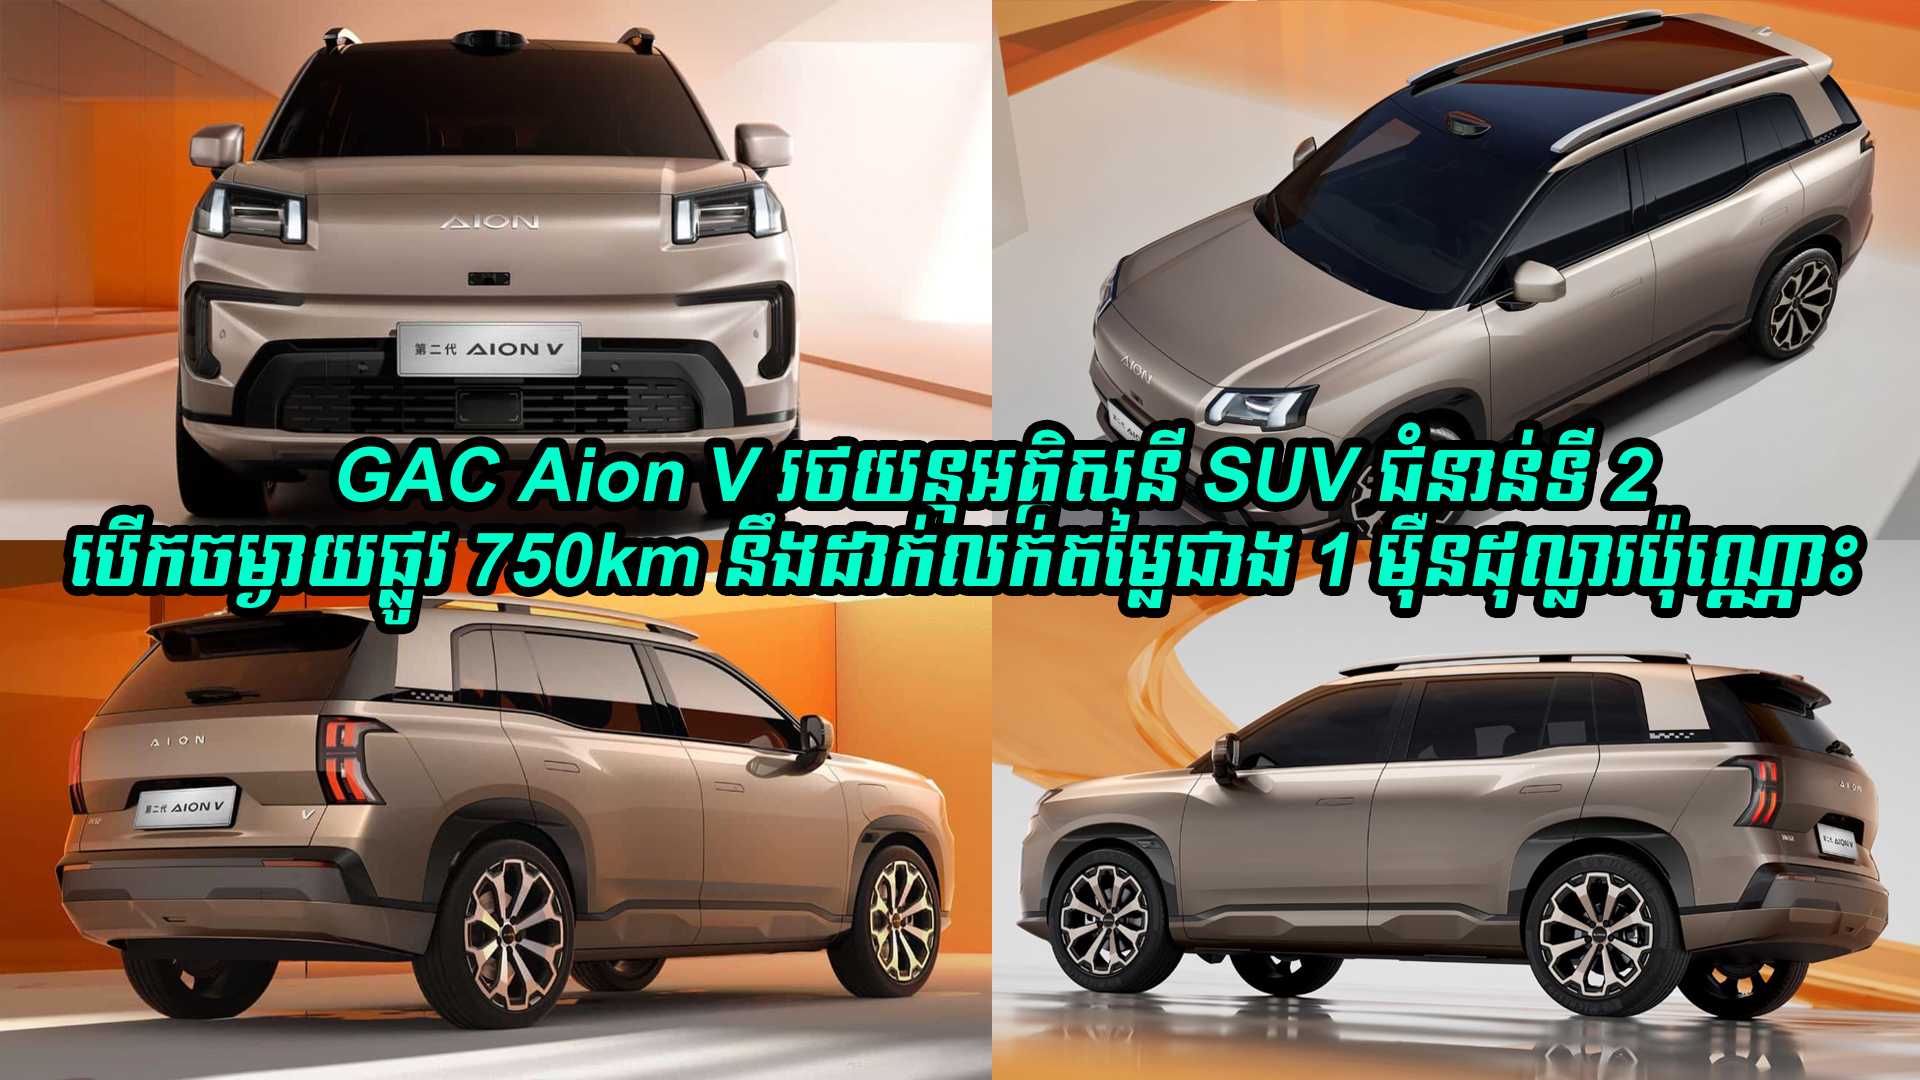 GAC Aion V រថយន្តអគ្គិសនី SUV ជំនាន់ទី 2 អាចបើកចម្ងាយផ្លូវ 750km នឹងដាក់លក់ក្នុងតម្លៃជាង 1 ម៉ឺនដុល្លារប៉ុណ្ណោះ